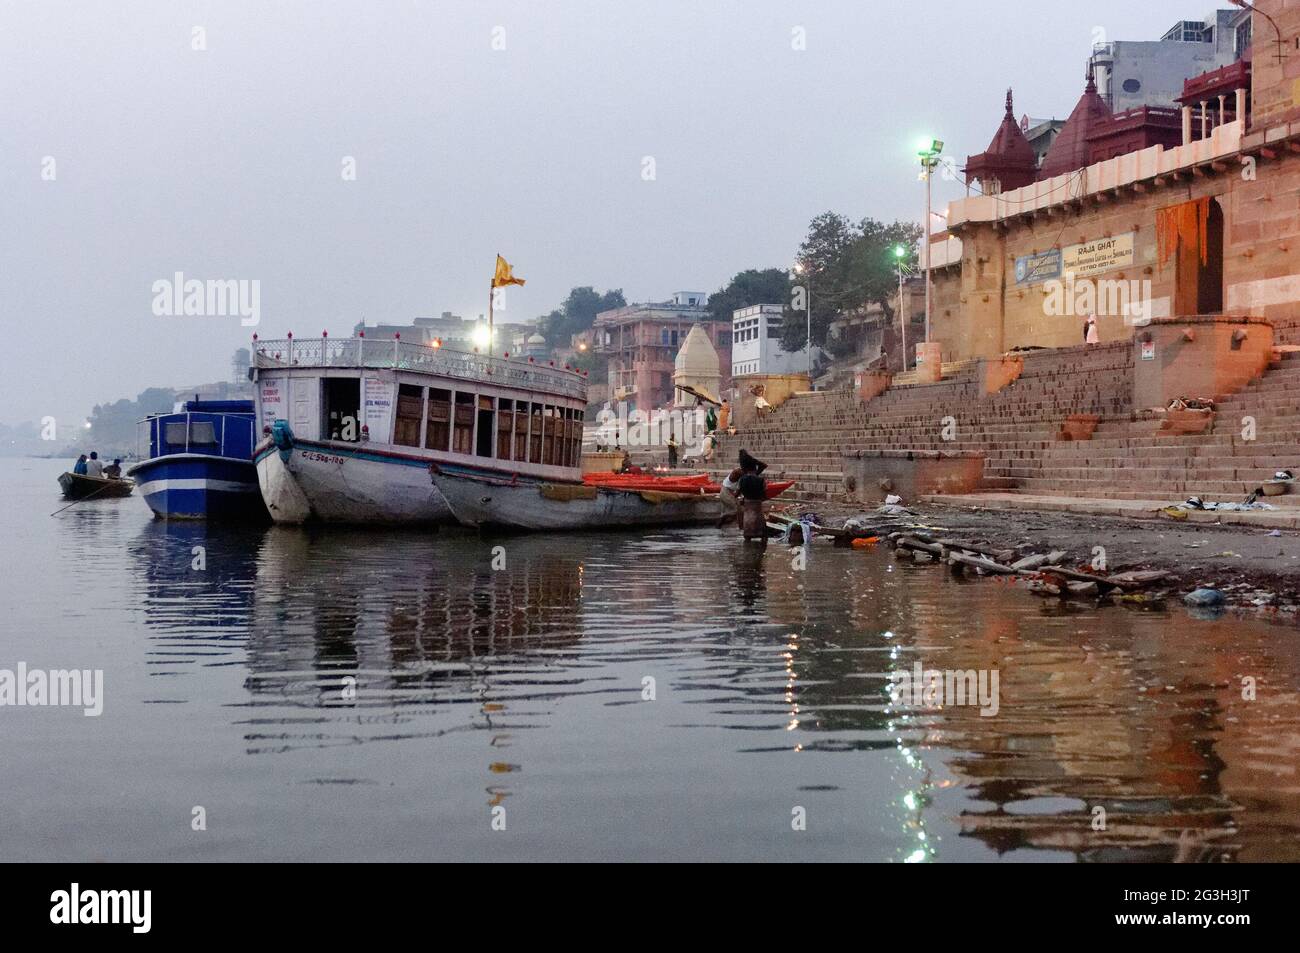 Boote, die zum Transport von Menschen und Touristen auf dem Fluss Ganges verwendet wurden, liegen am Flussufer, Varanasi, Utter Pradesh, Indien Stockfoto